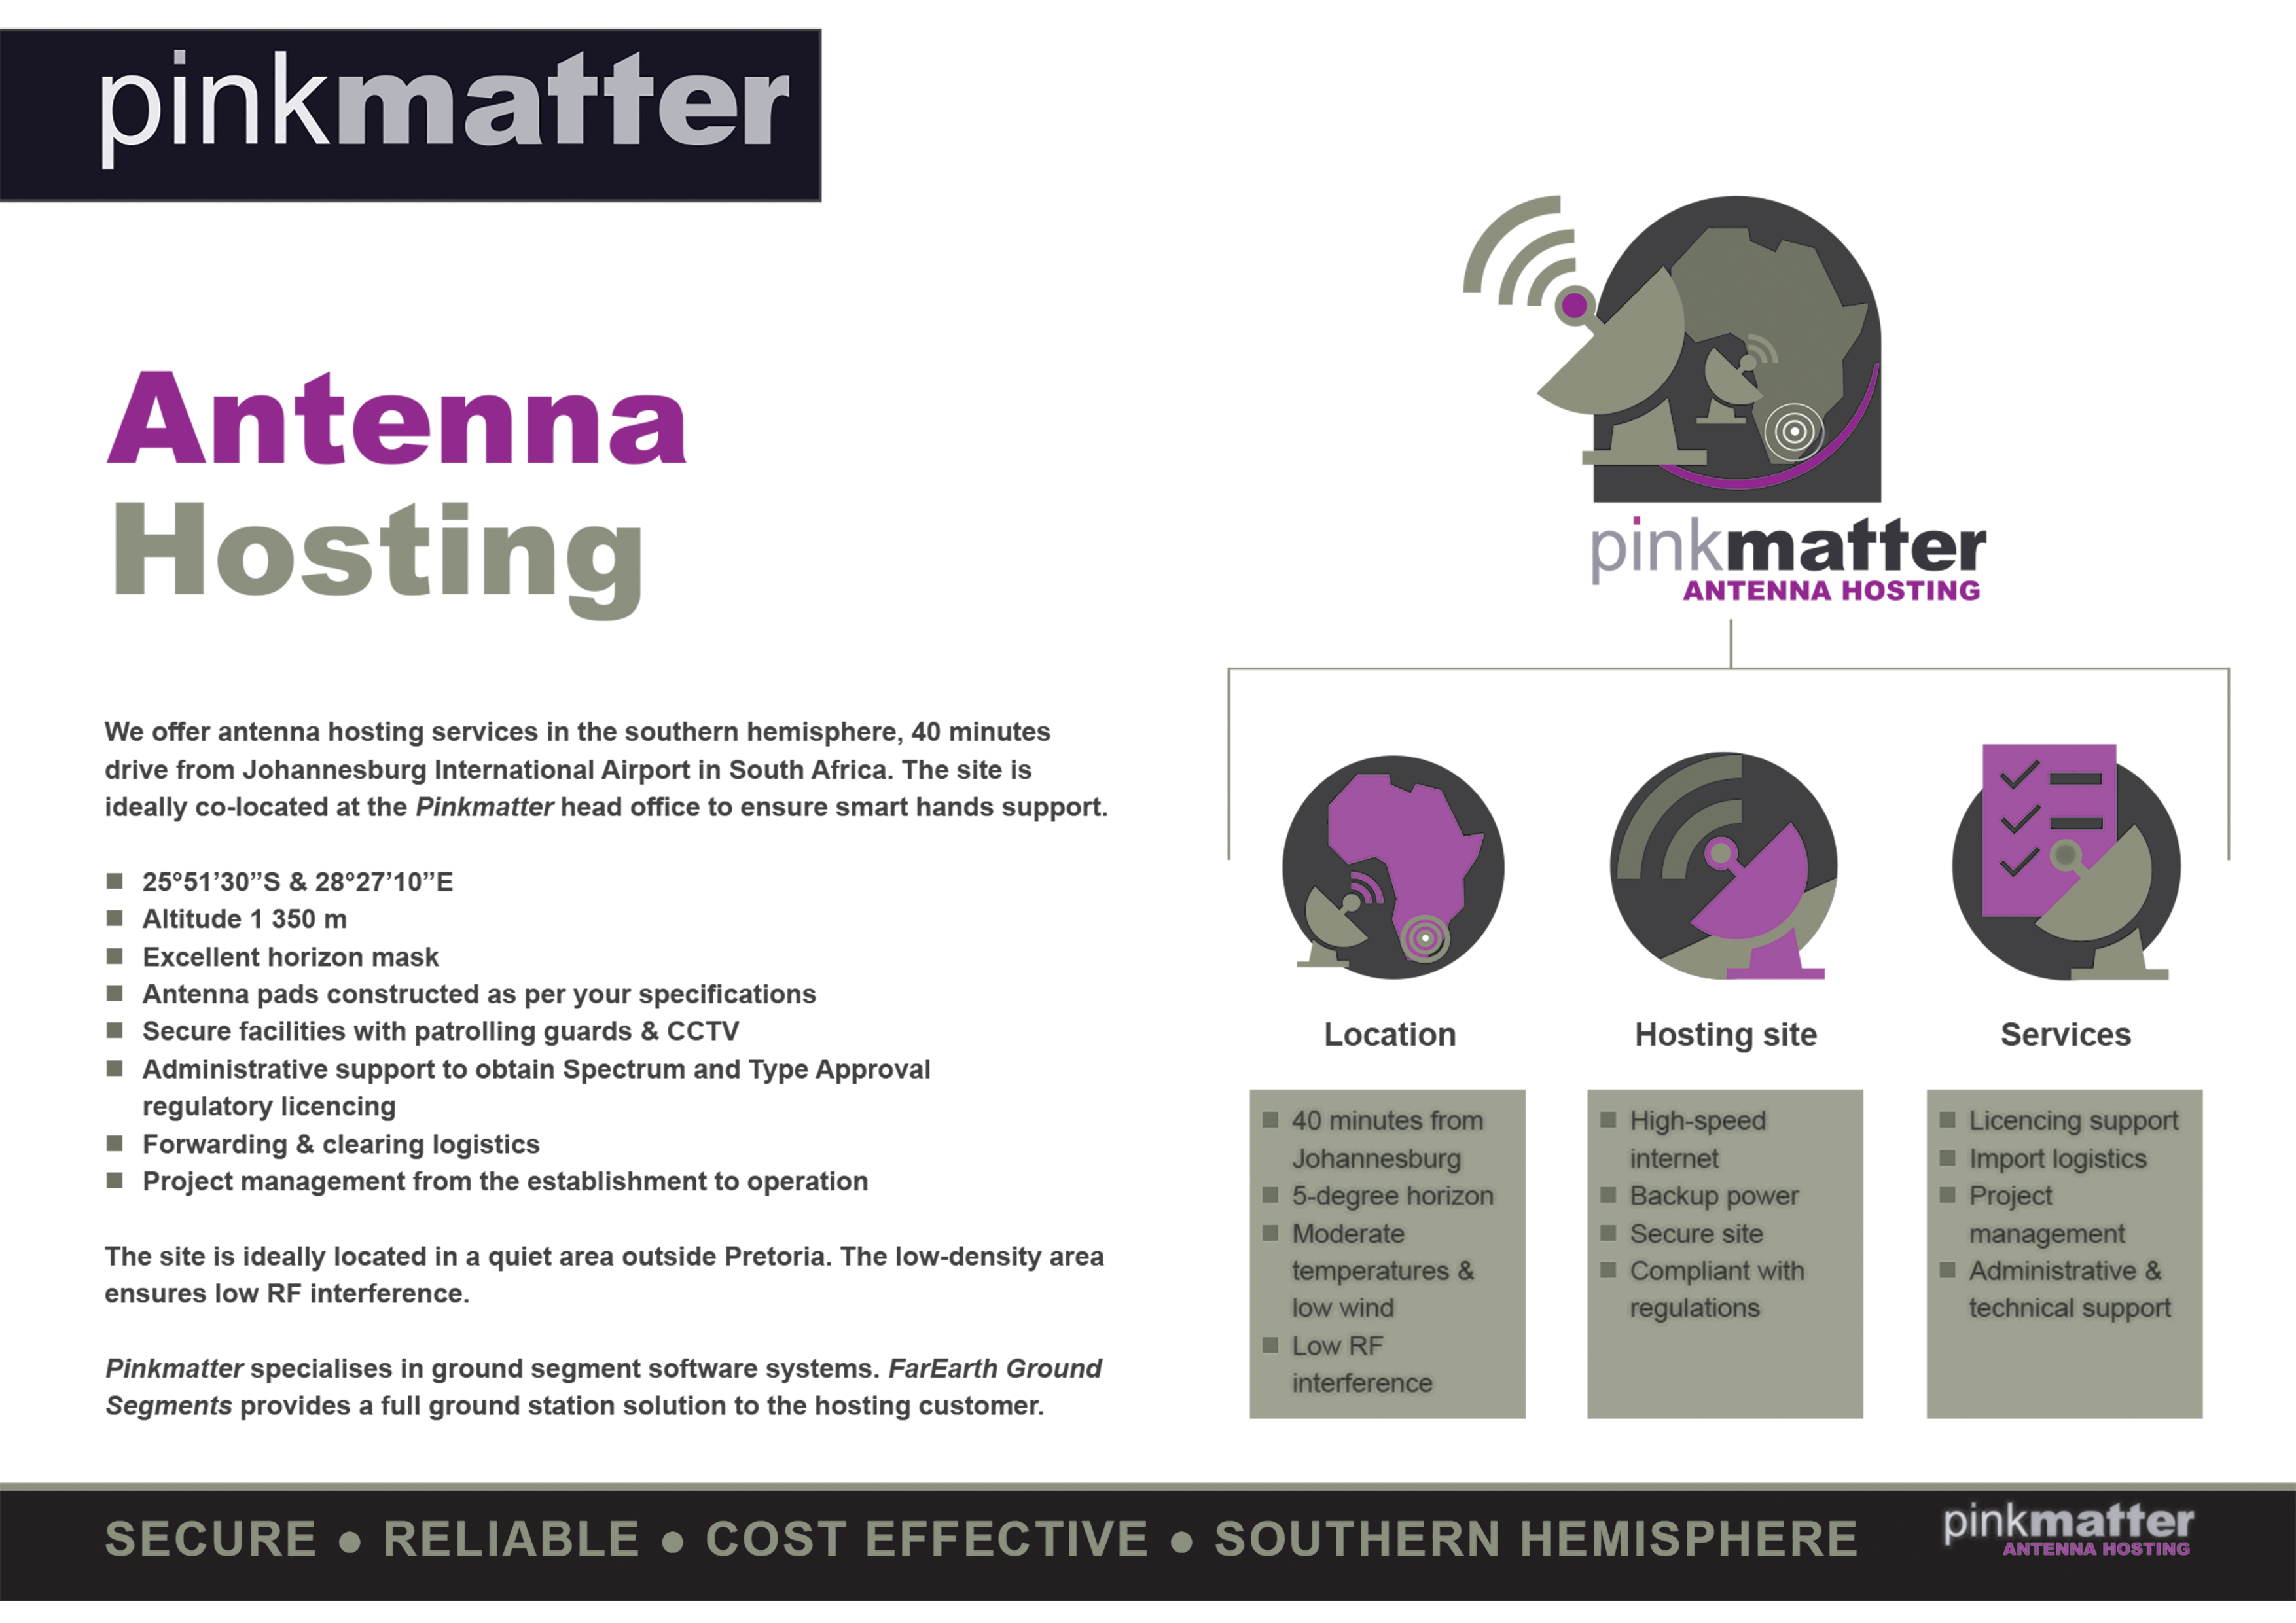 Pinkmatter_Antenna_Hosting_Brochure download